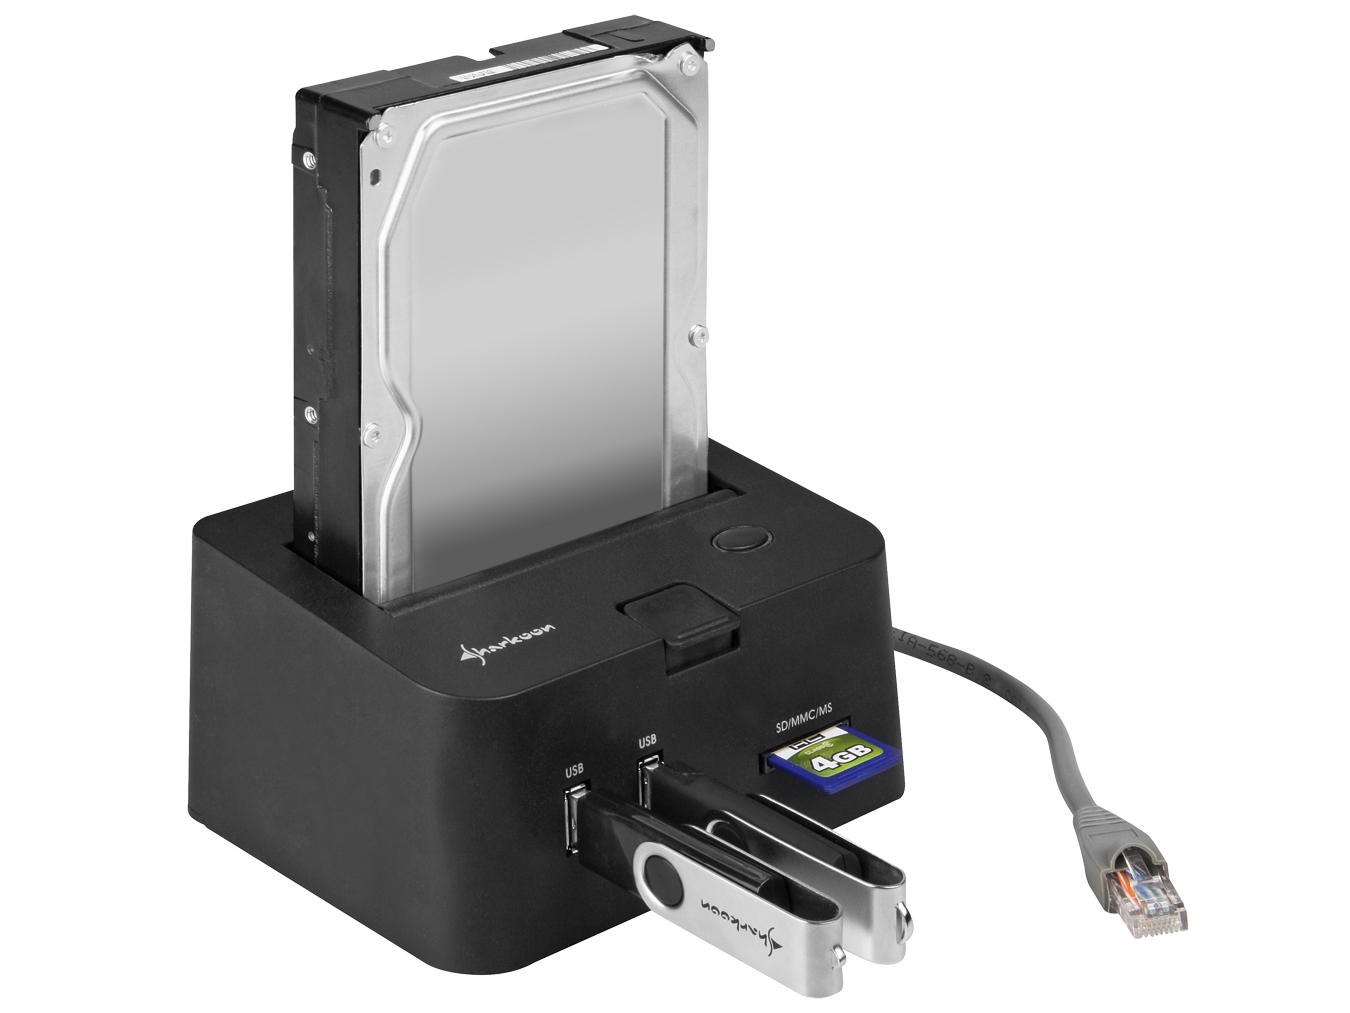 resultat hjælpe forhandler Sharkoon Dock Connects SATA HDDs via Gigabit Ethernet | Tom's Hardware